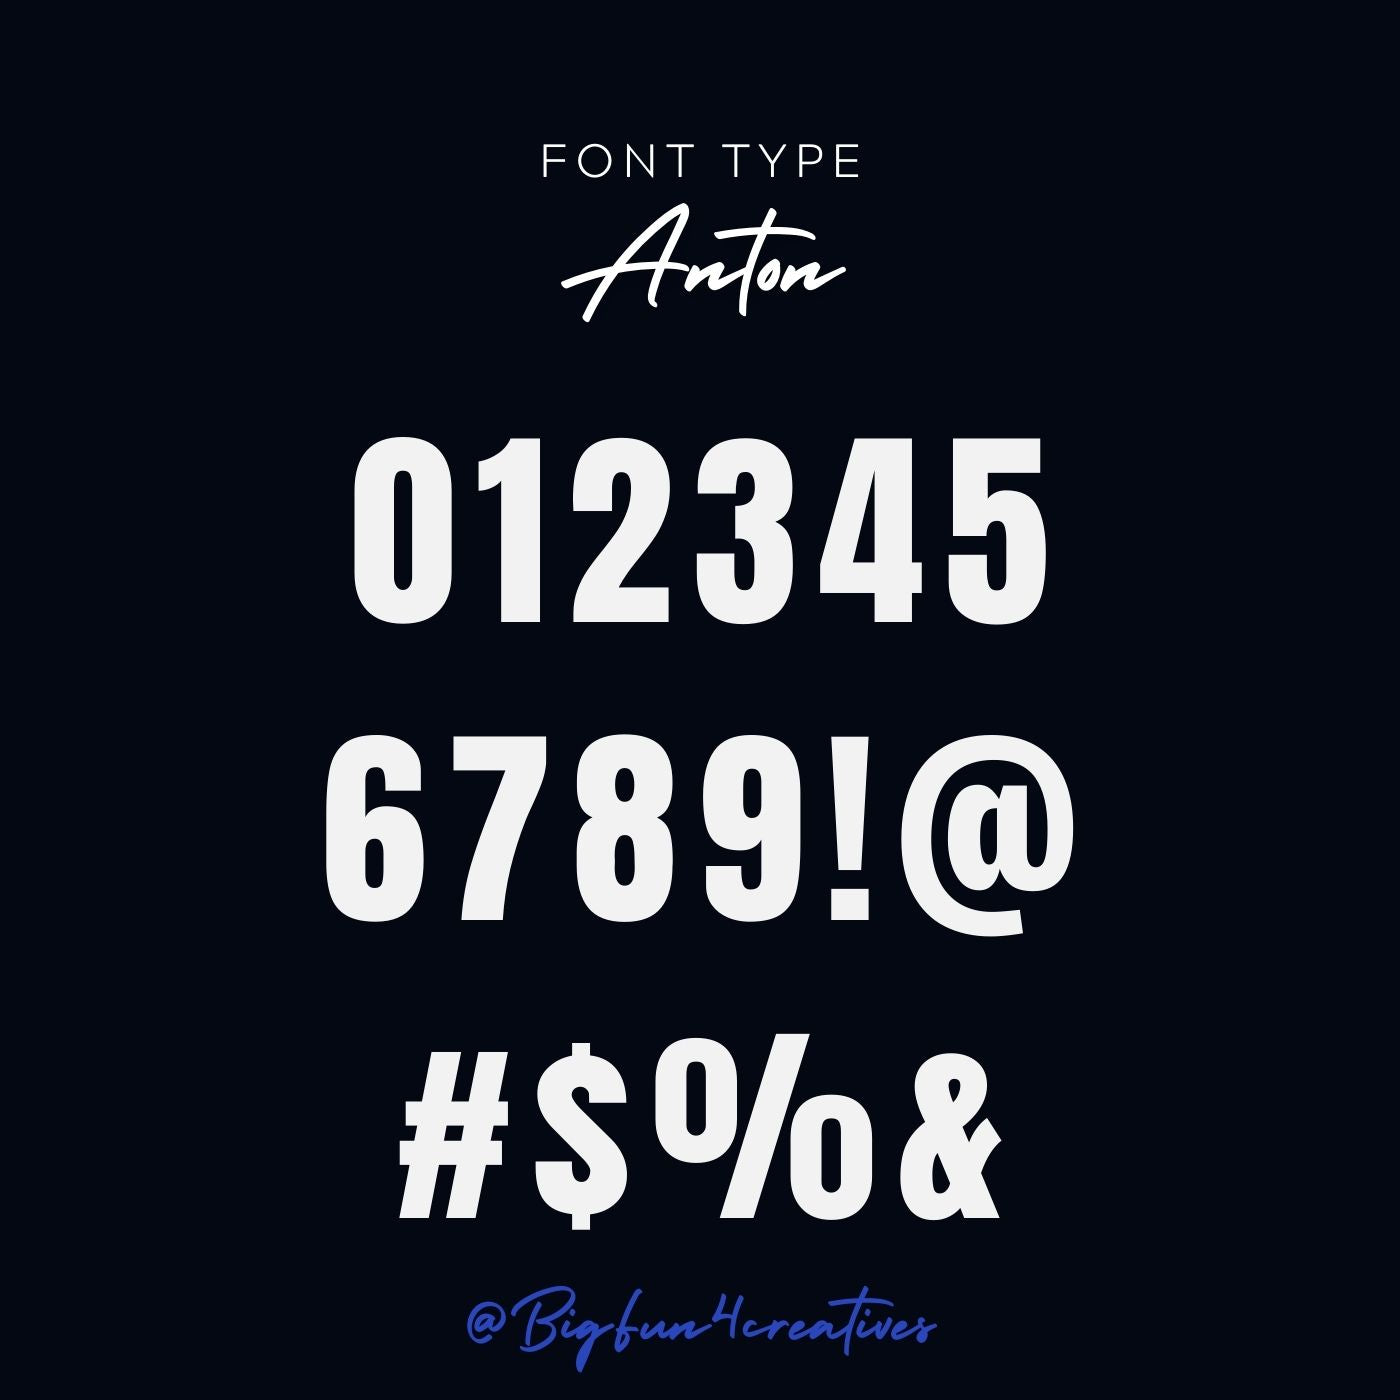 Anton Font Type Lettering Stencil Set